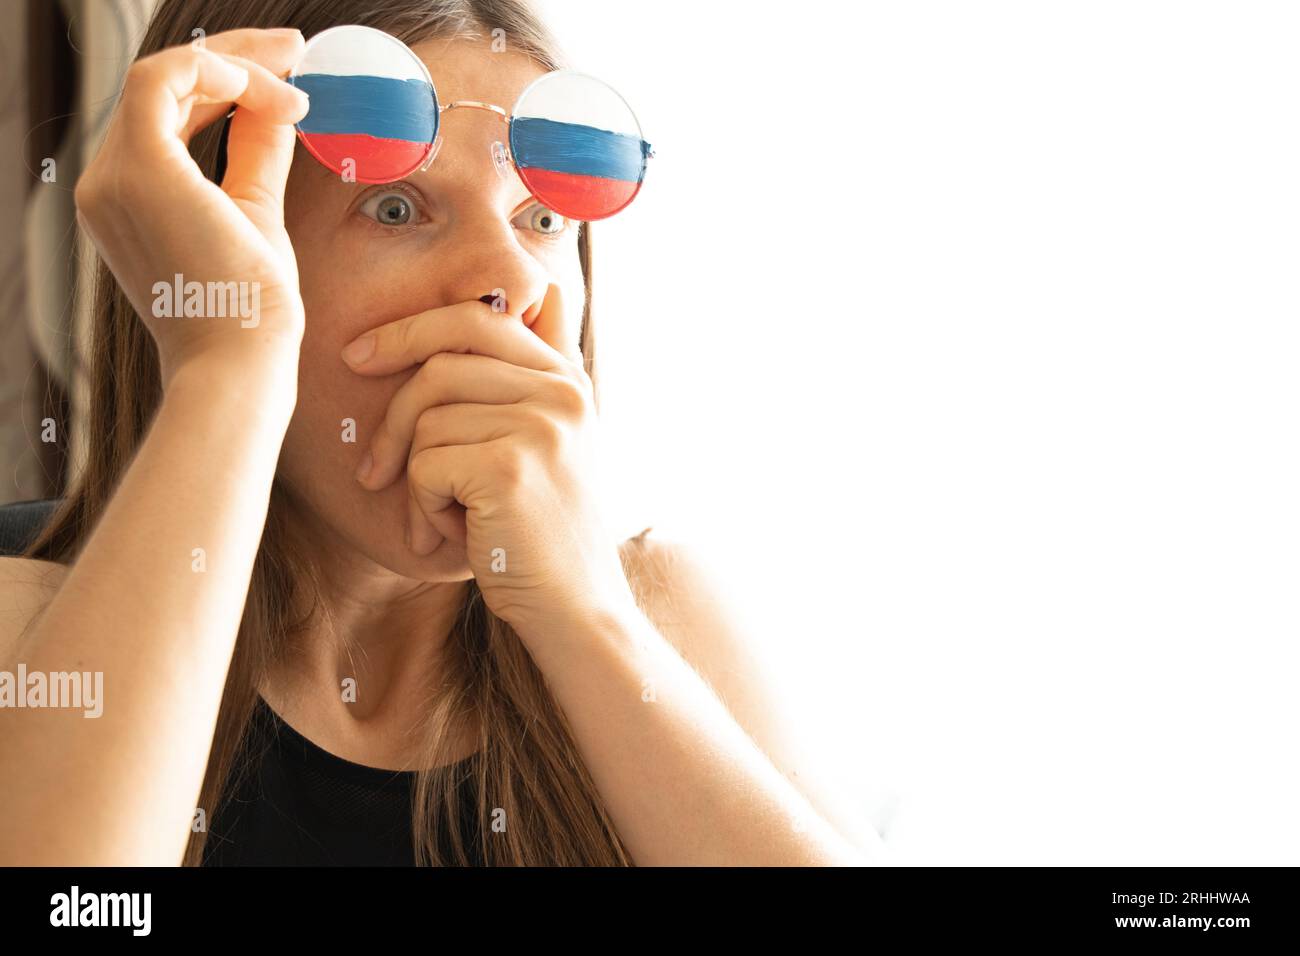 Drapeau de la Russie sur les lunettes d'une fille, aveugle et trompée par la propagande russe, ne voit rien à cause de la propagande Banque D'Images